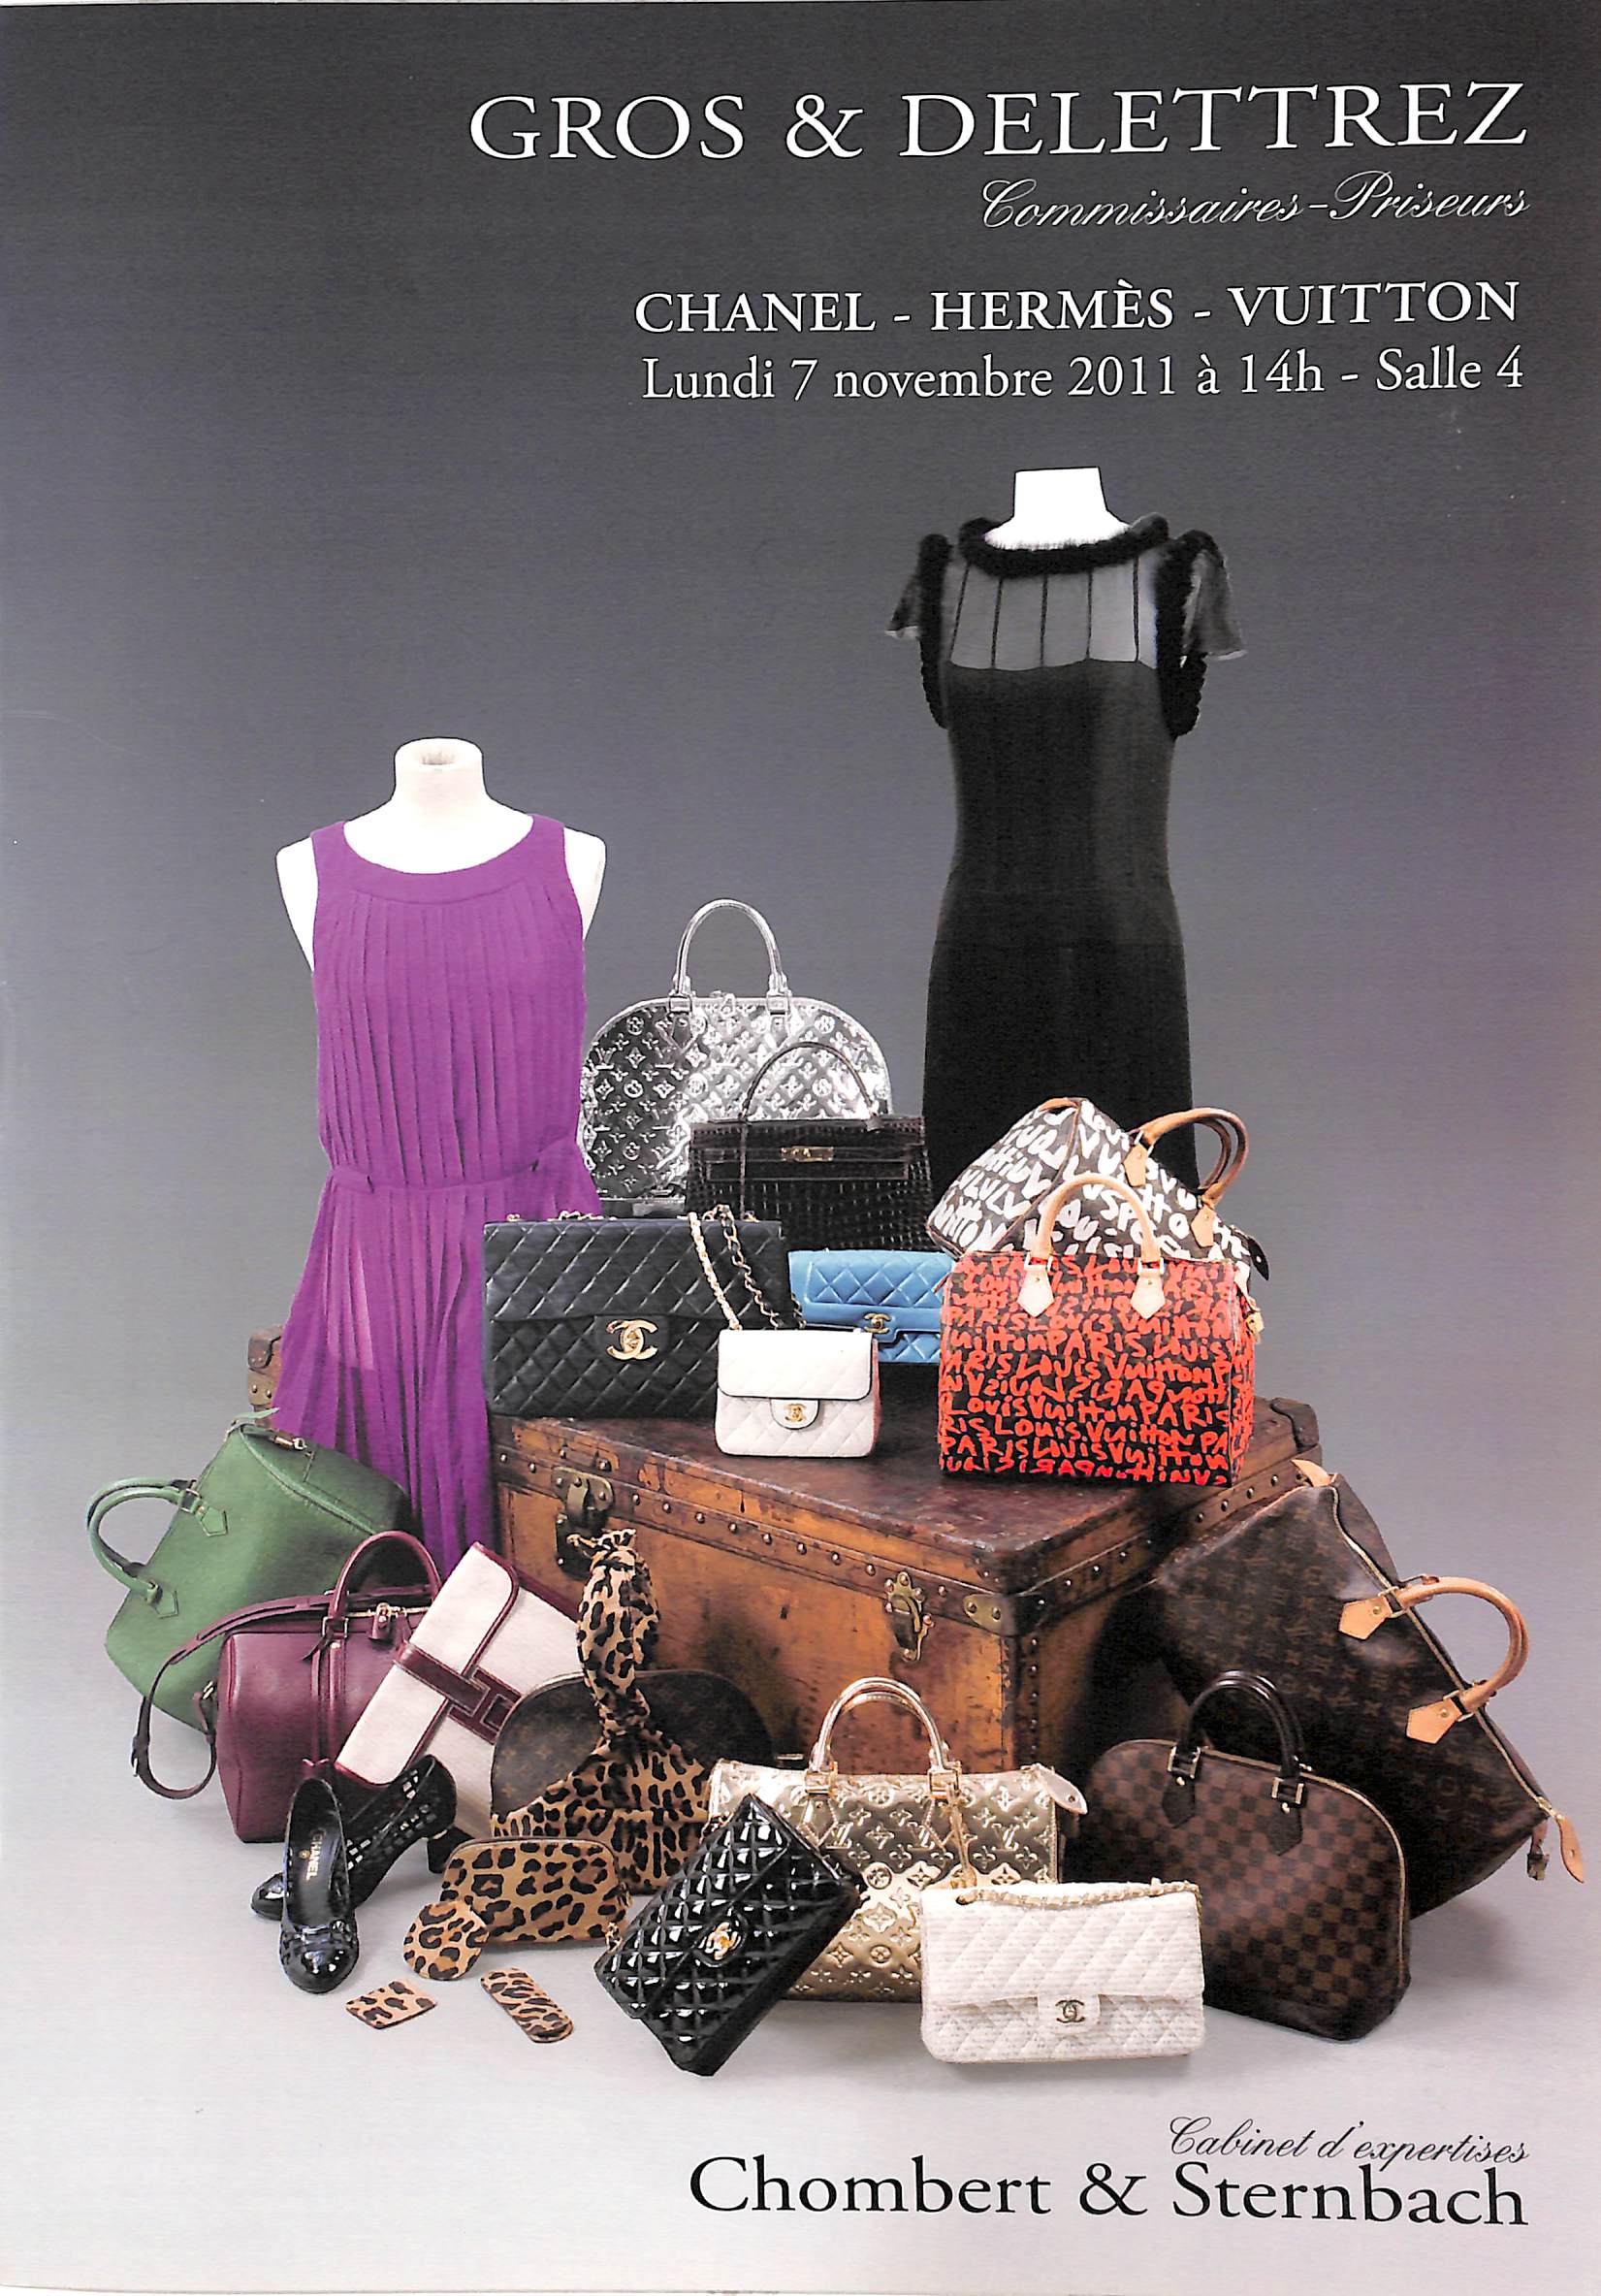 Sold at Auction: Vintage Louis Vuitton Malletier Shoulder Bag